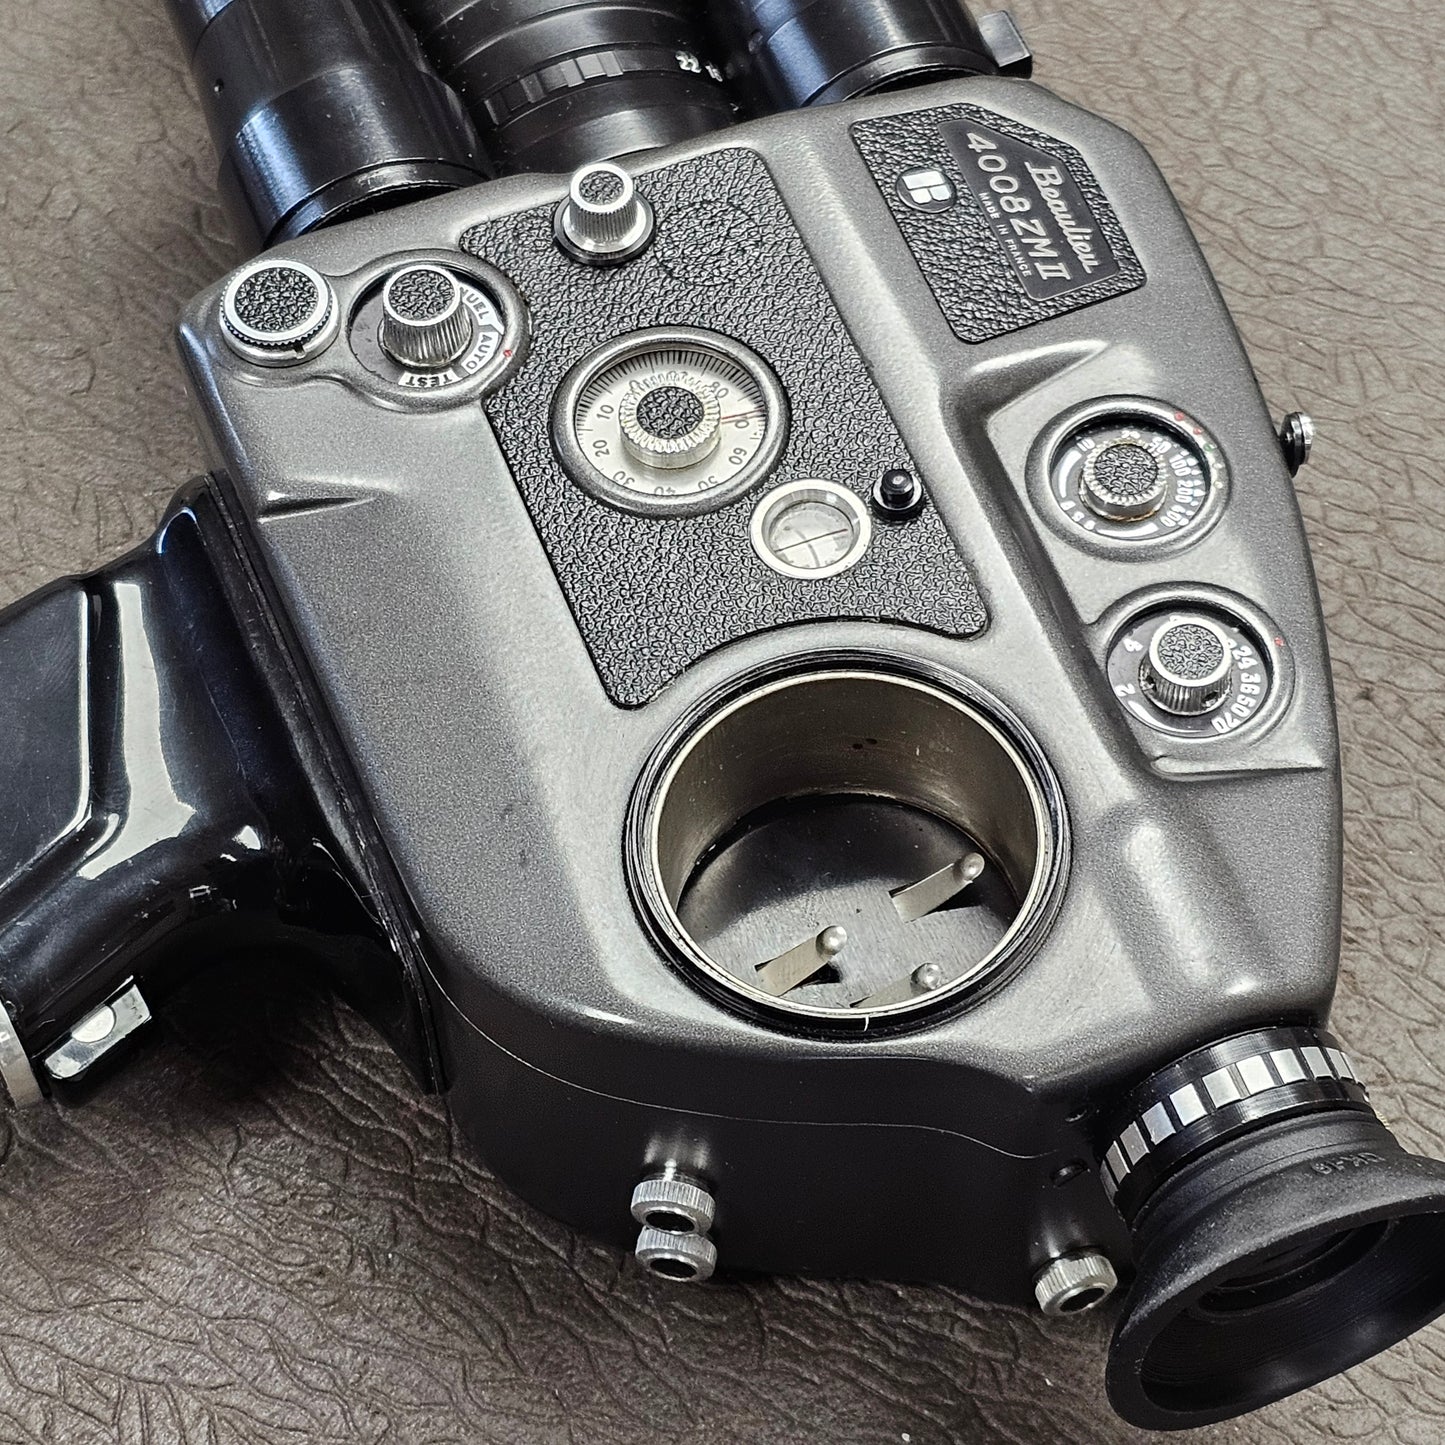 Beaulieu 4008 ZM2 Super 8mm Camera S# 818622 with Schneider-Kreuznach Beaulieu Optivaron 6-66mm T1.8 Zoom lens S# 11936958